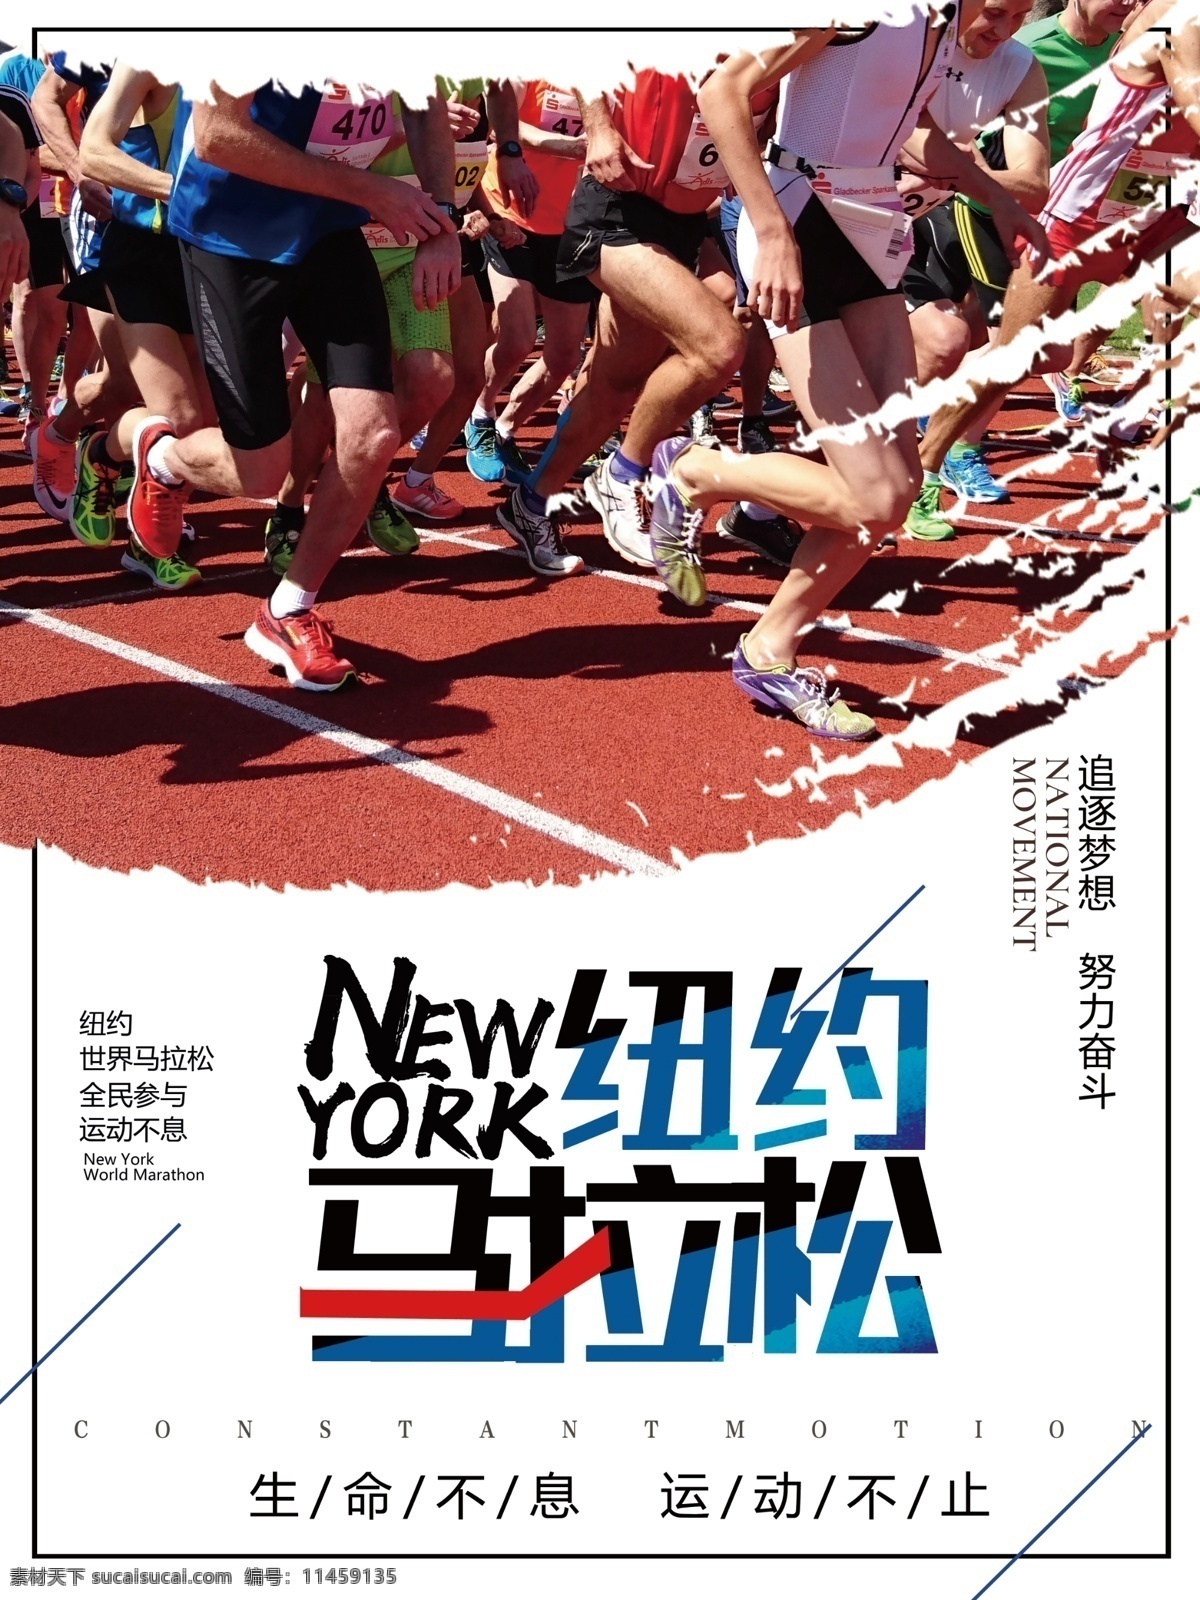 纽约 马拉松 体育运动 海报 笔刷素材 体育 体育海报 拉松 跑步的人 跑步人群 运动的人 比赛 纽约马拉松 激情马拉松 体育比赛 奔跑吧